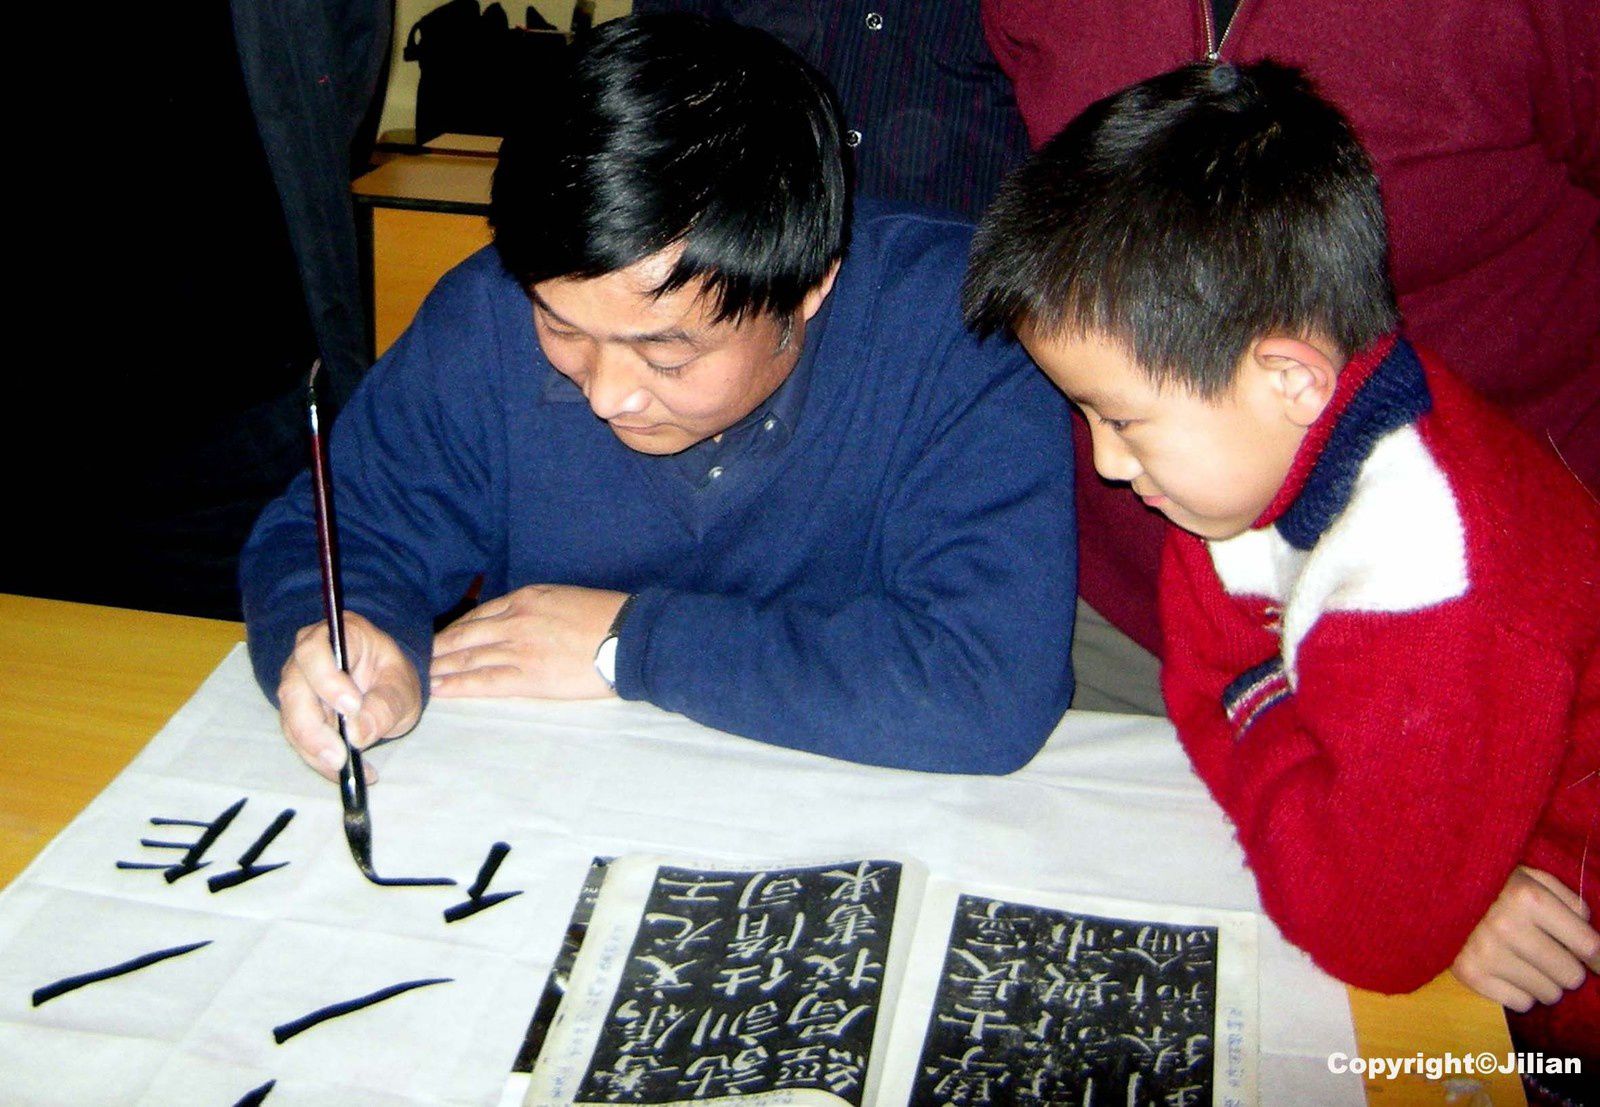 A l'école de calligraphie de Pékin - 北京书法学校, il y a quelques années (cela n'existe plus maintenant) des cours étaient organisés le dimanche pour les amateurs. J'étais la seule femme et la seule étrangère à assister au cours. L'école n'est maintenant ouverte qu'aux étudiants..